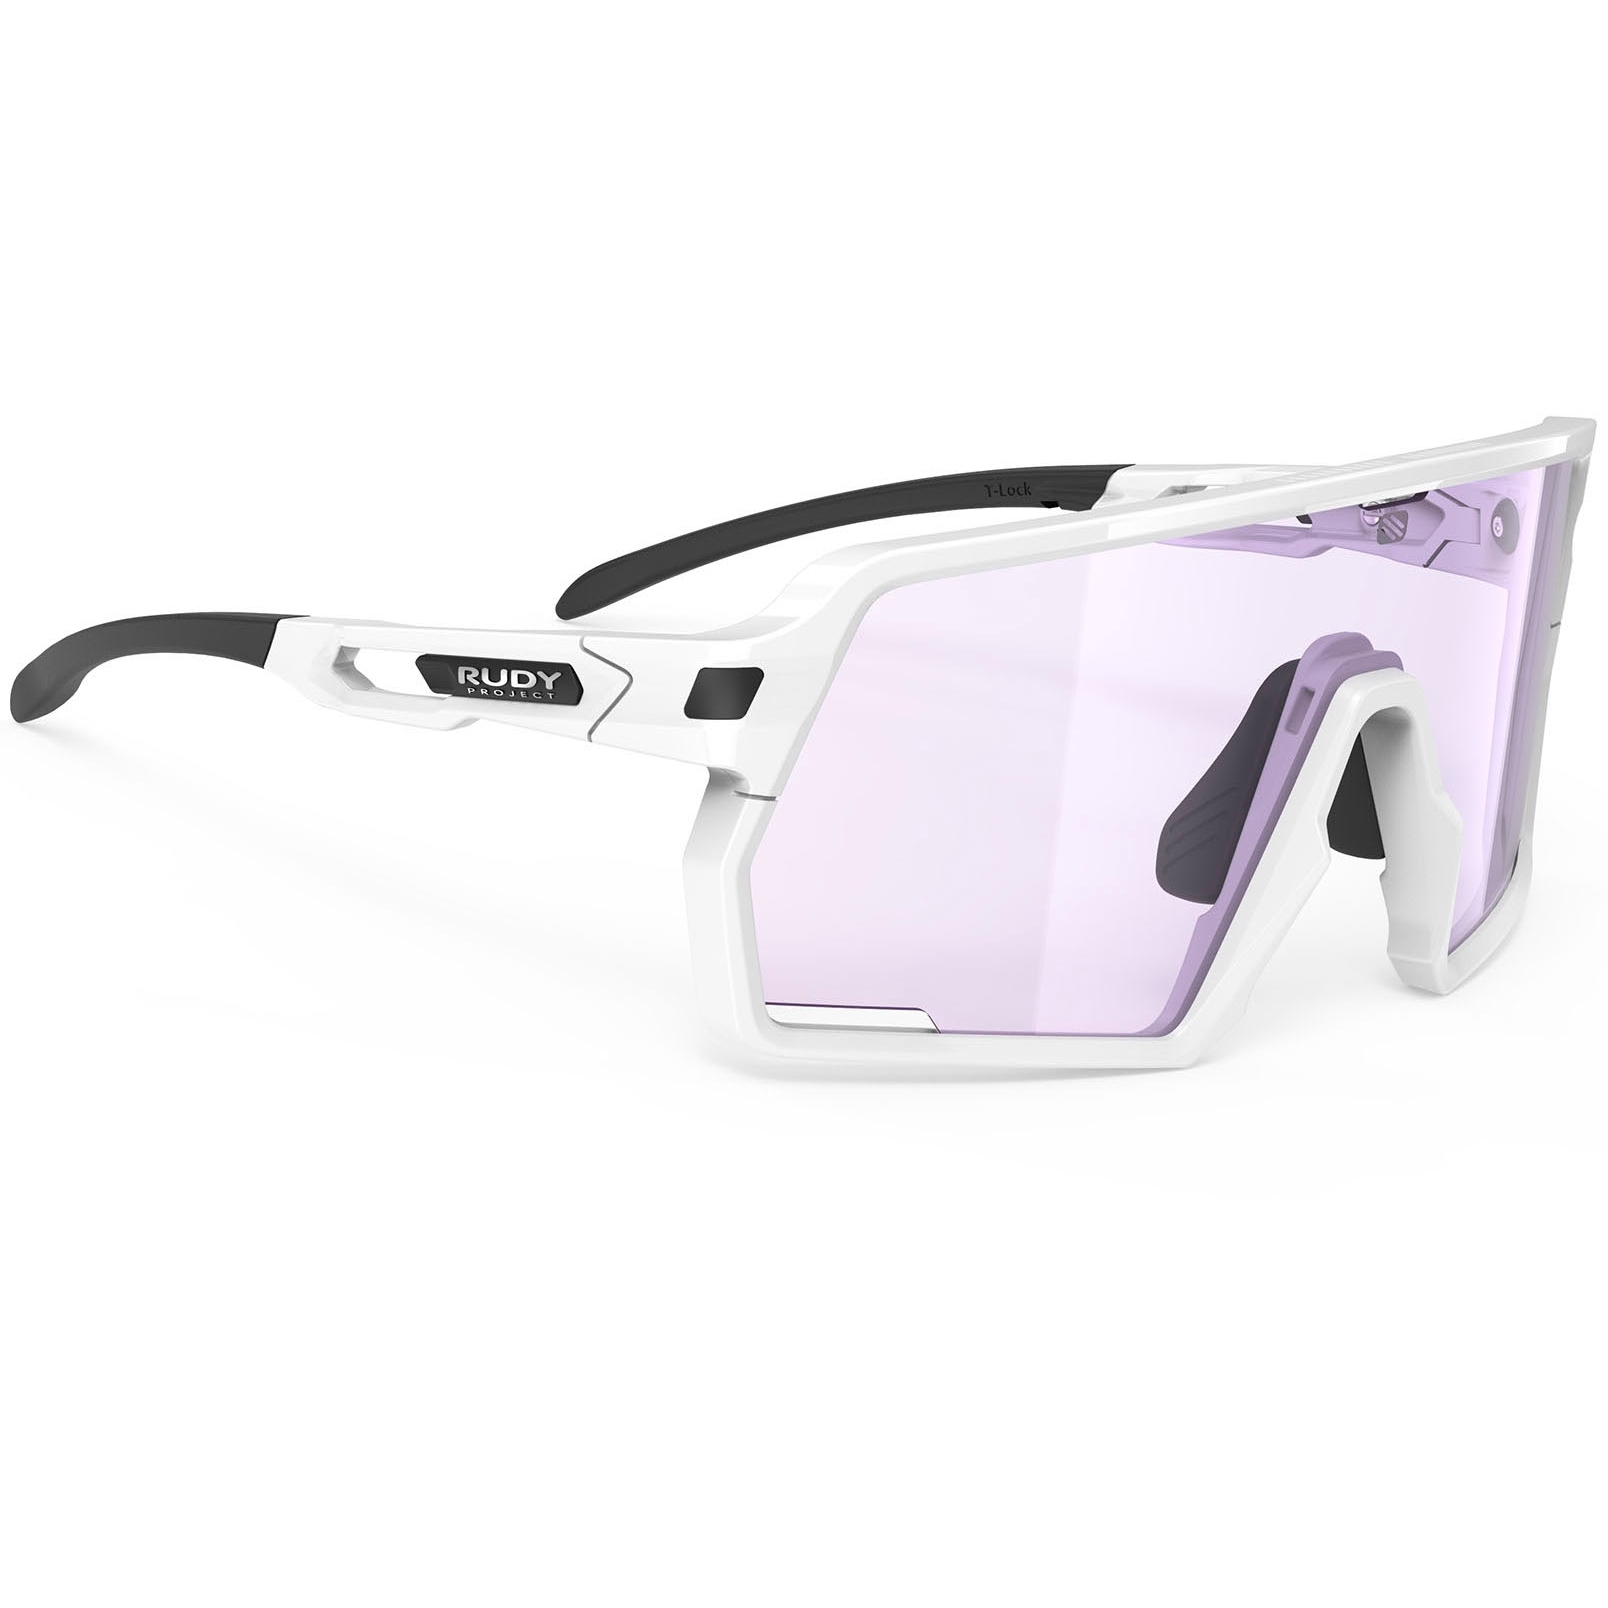 Produktbild von Rudy Project Kelion Photochromic Brille - White Gloss/ImpactX 2 Laser Purple